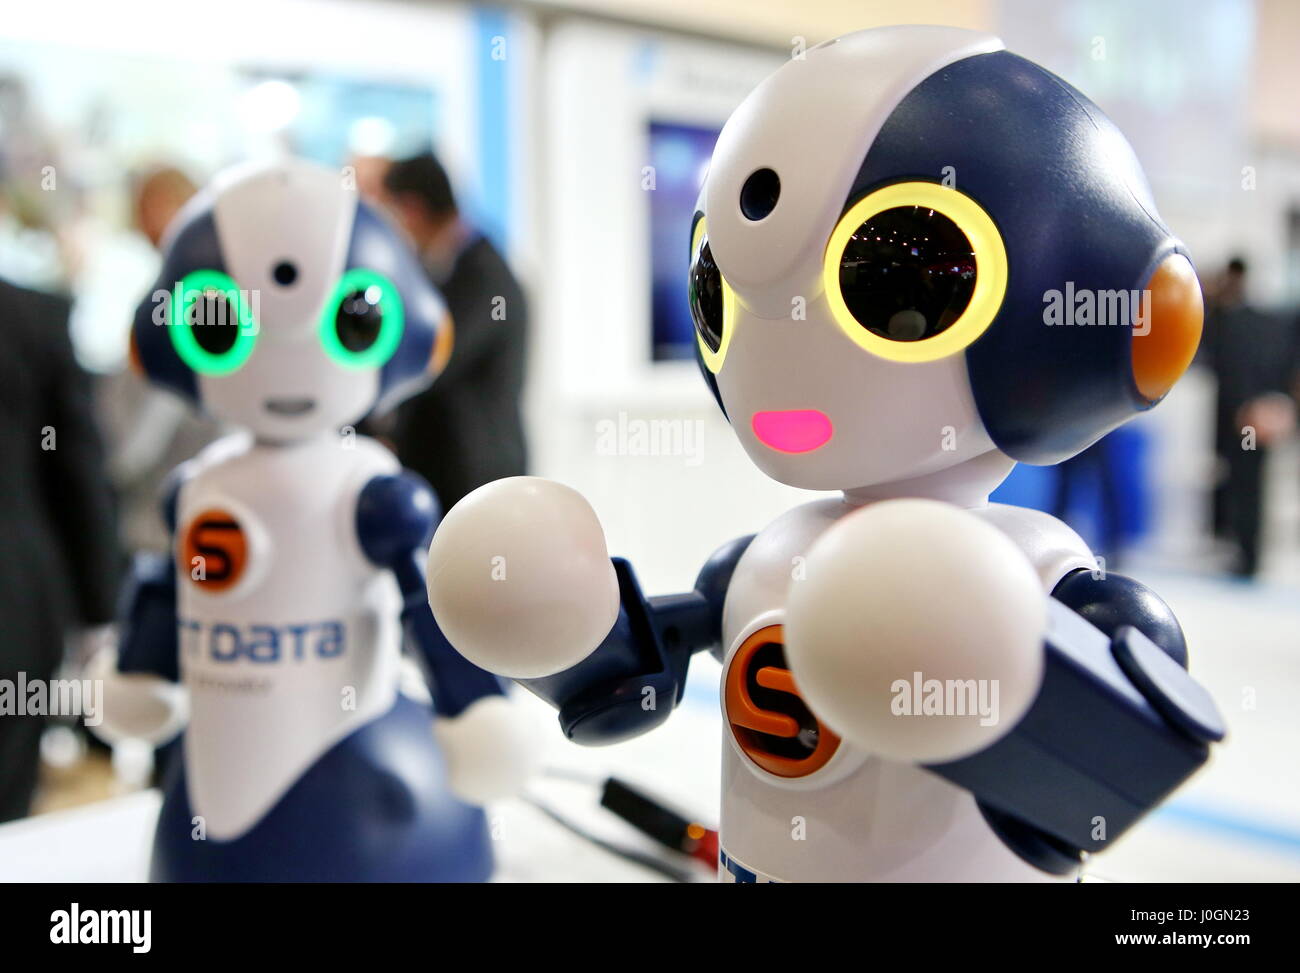 Sota robot immagini e fotografie stock ad alta risoluzione - Alamy